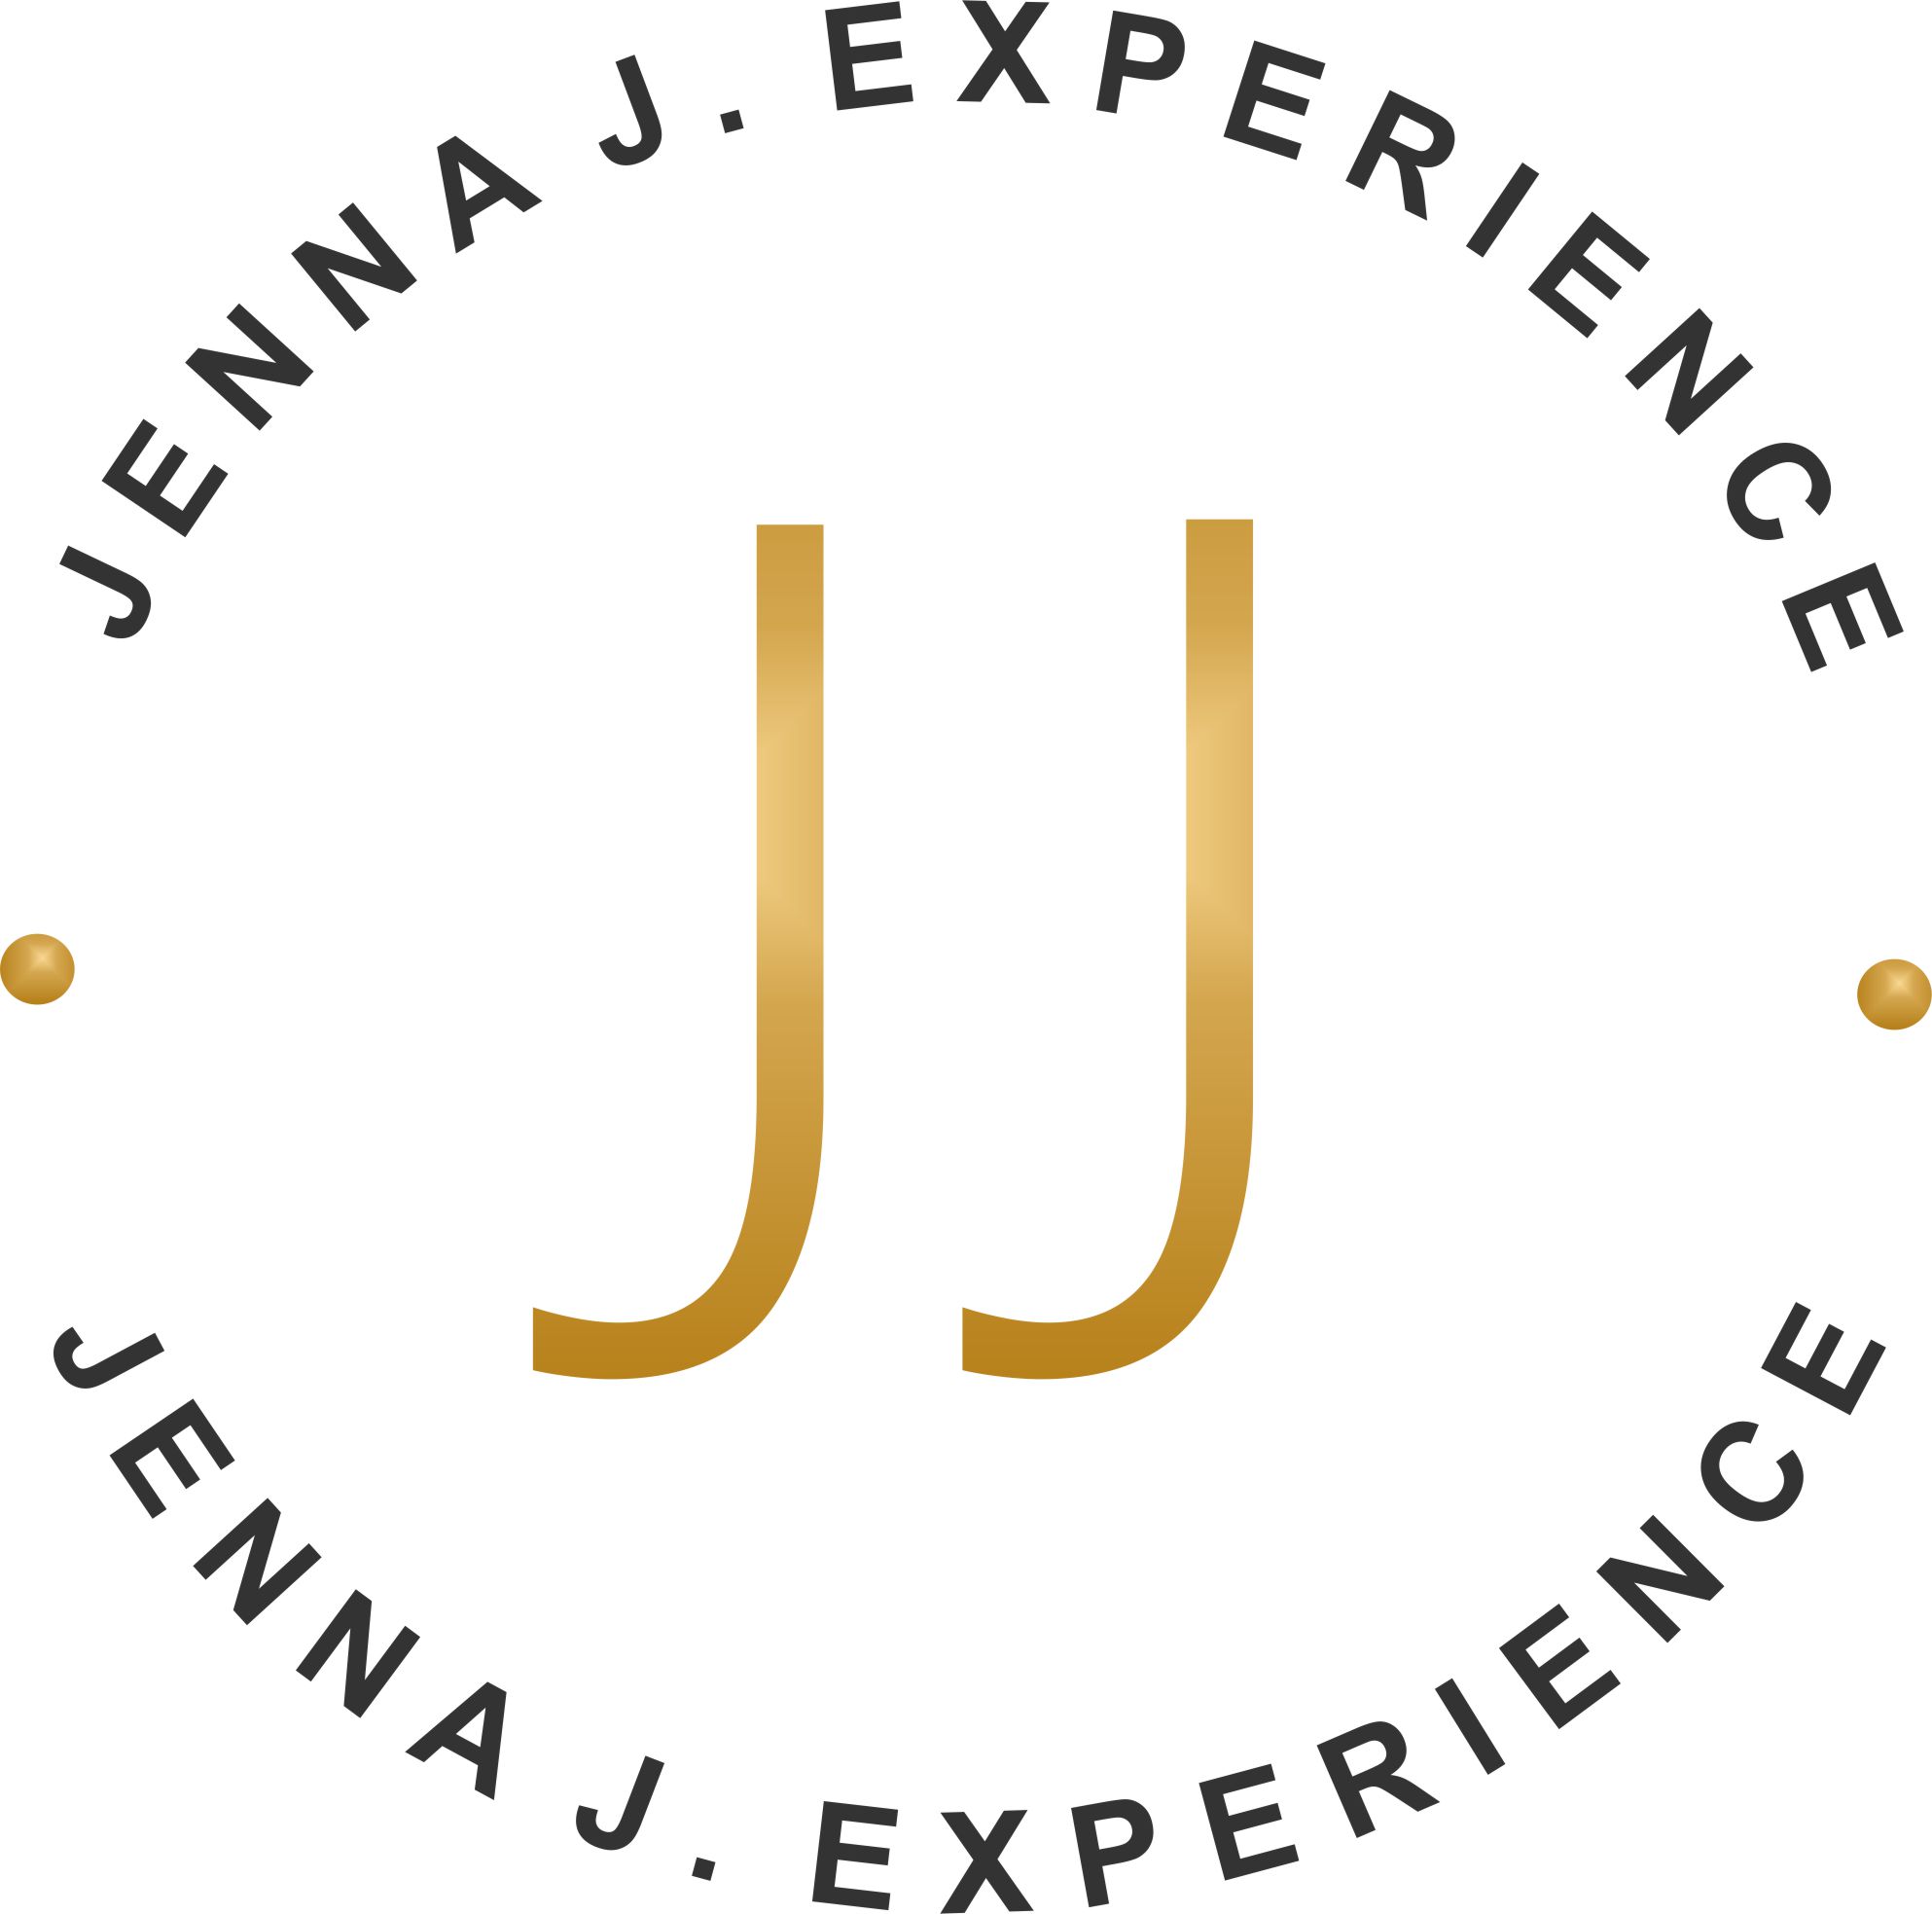 Jenna J Experience